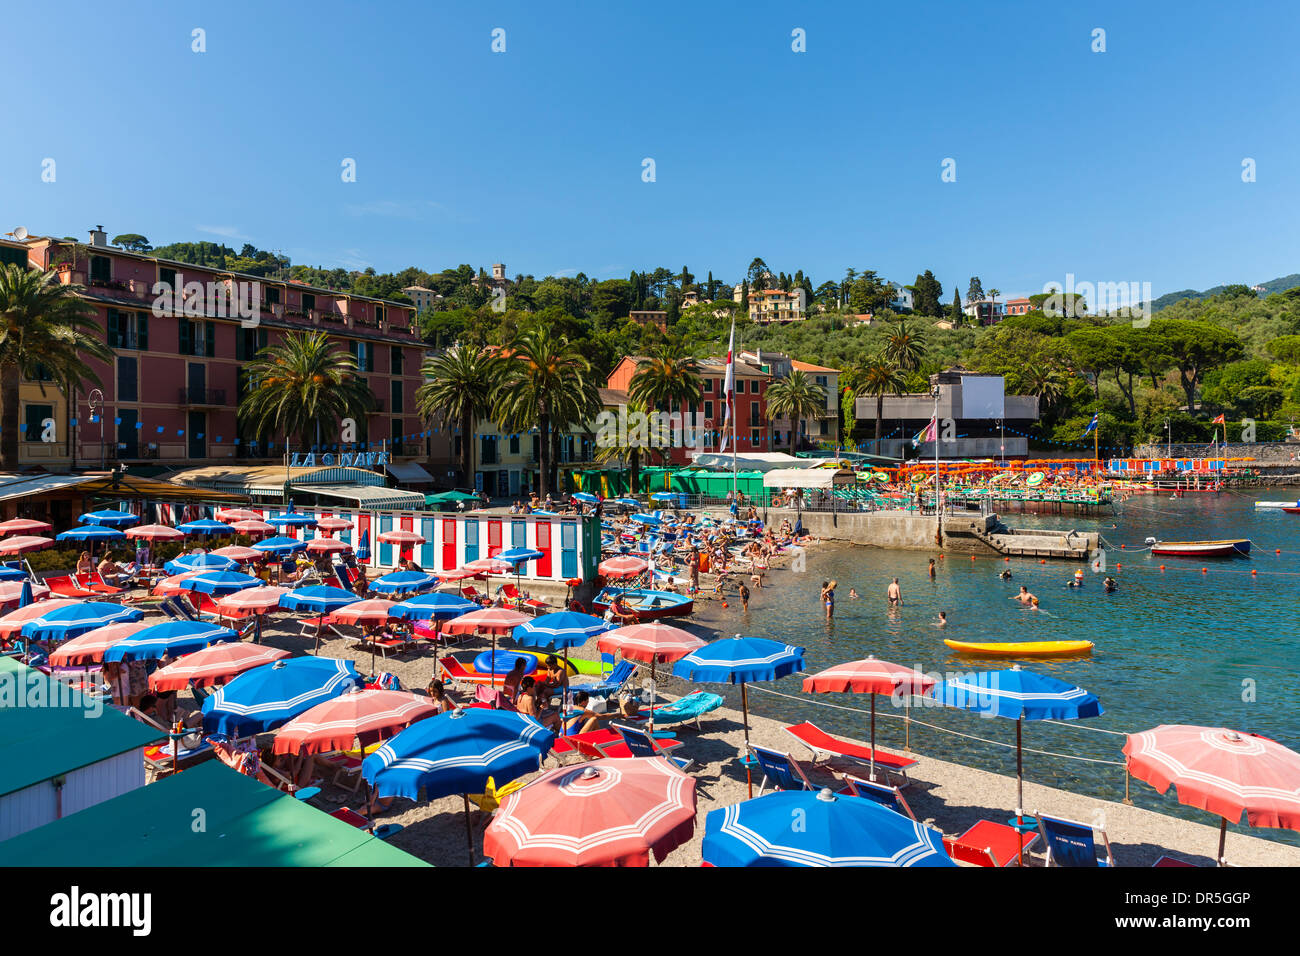 Italia, Liguria, Rapallo, resort costero de San Michele di Pagana Foto de stock